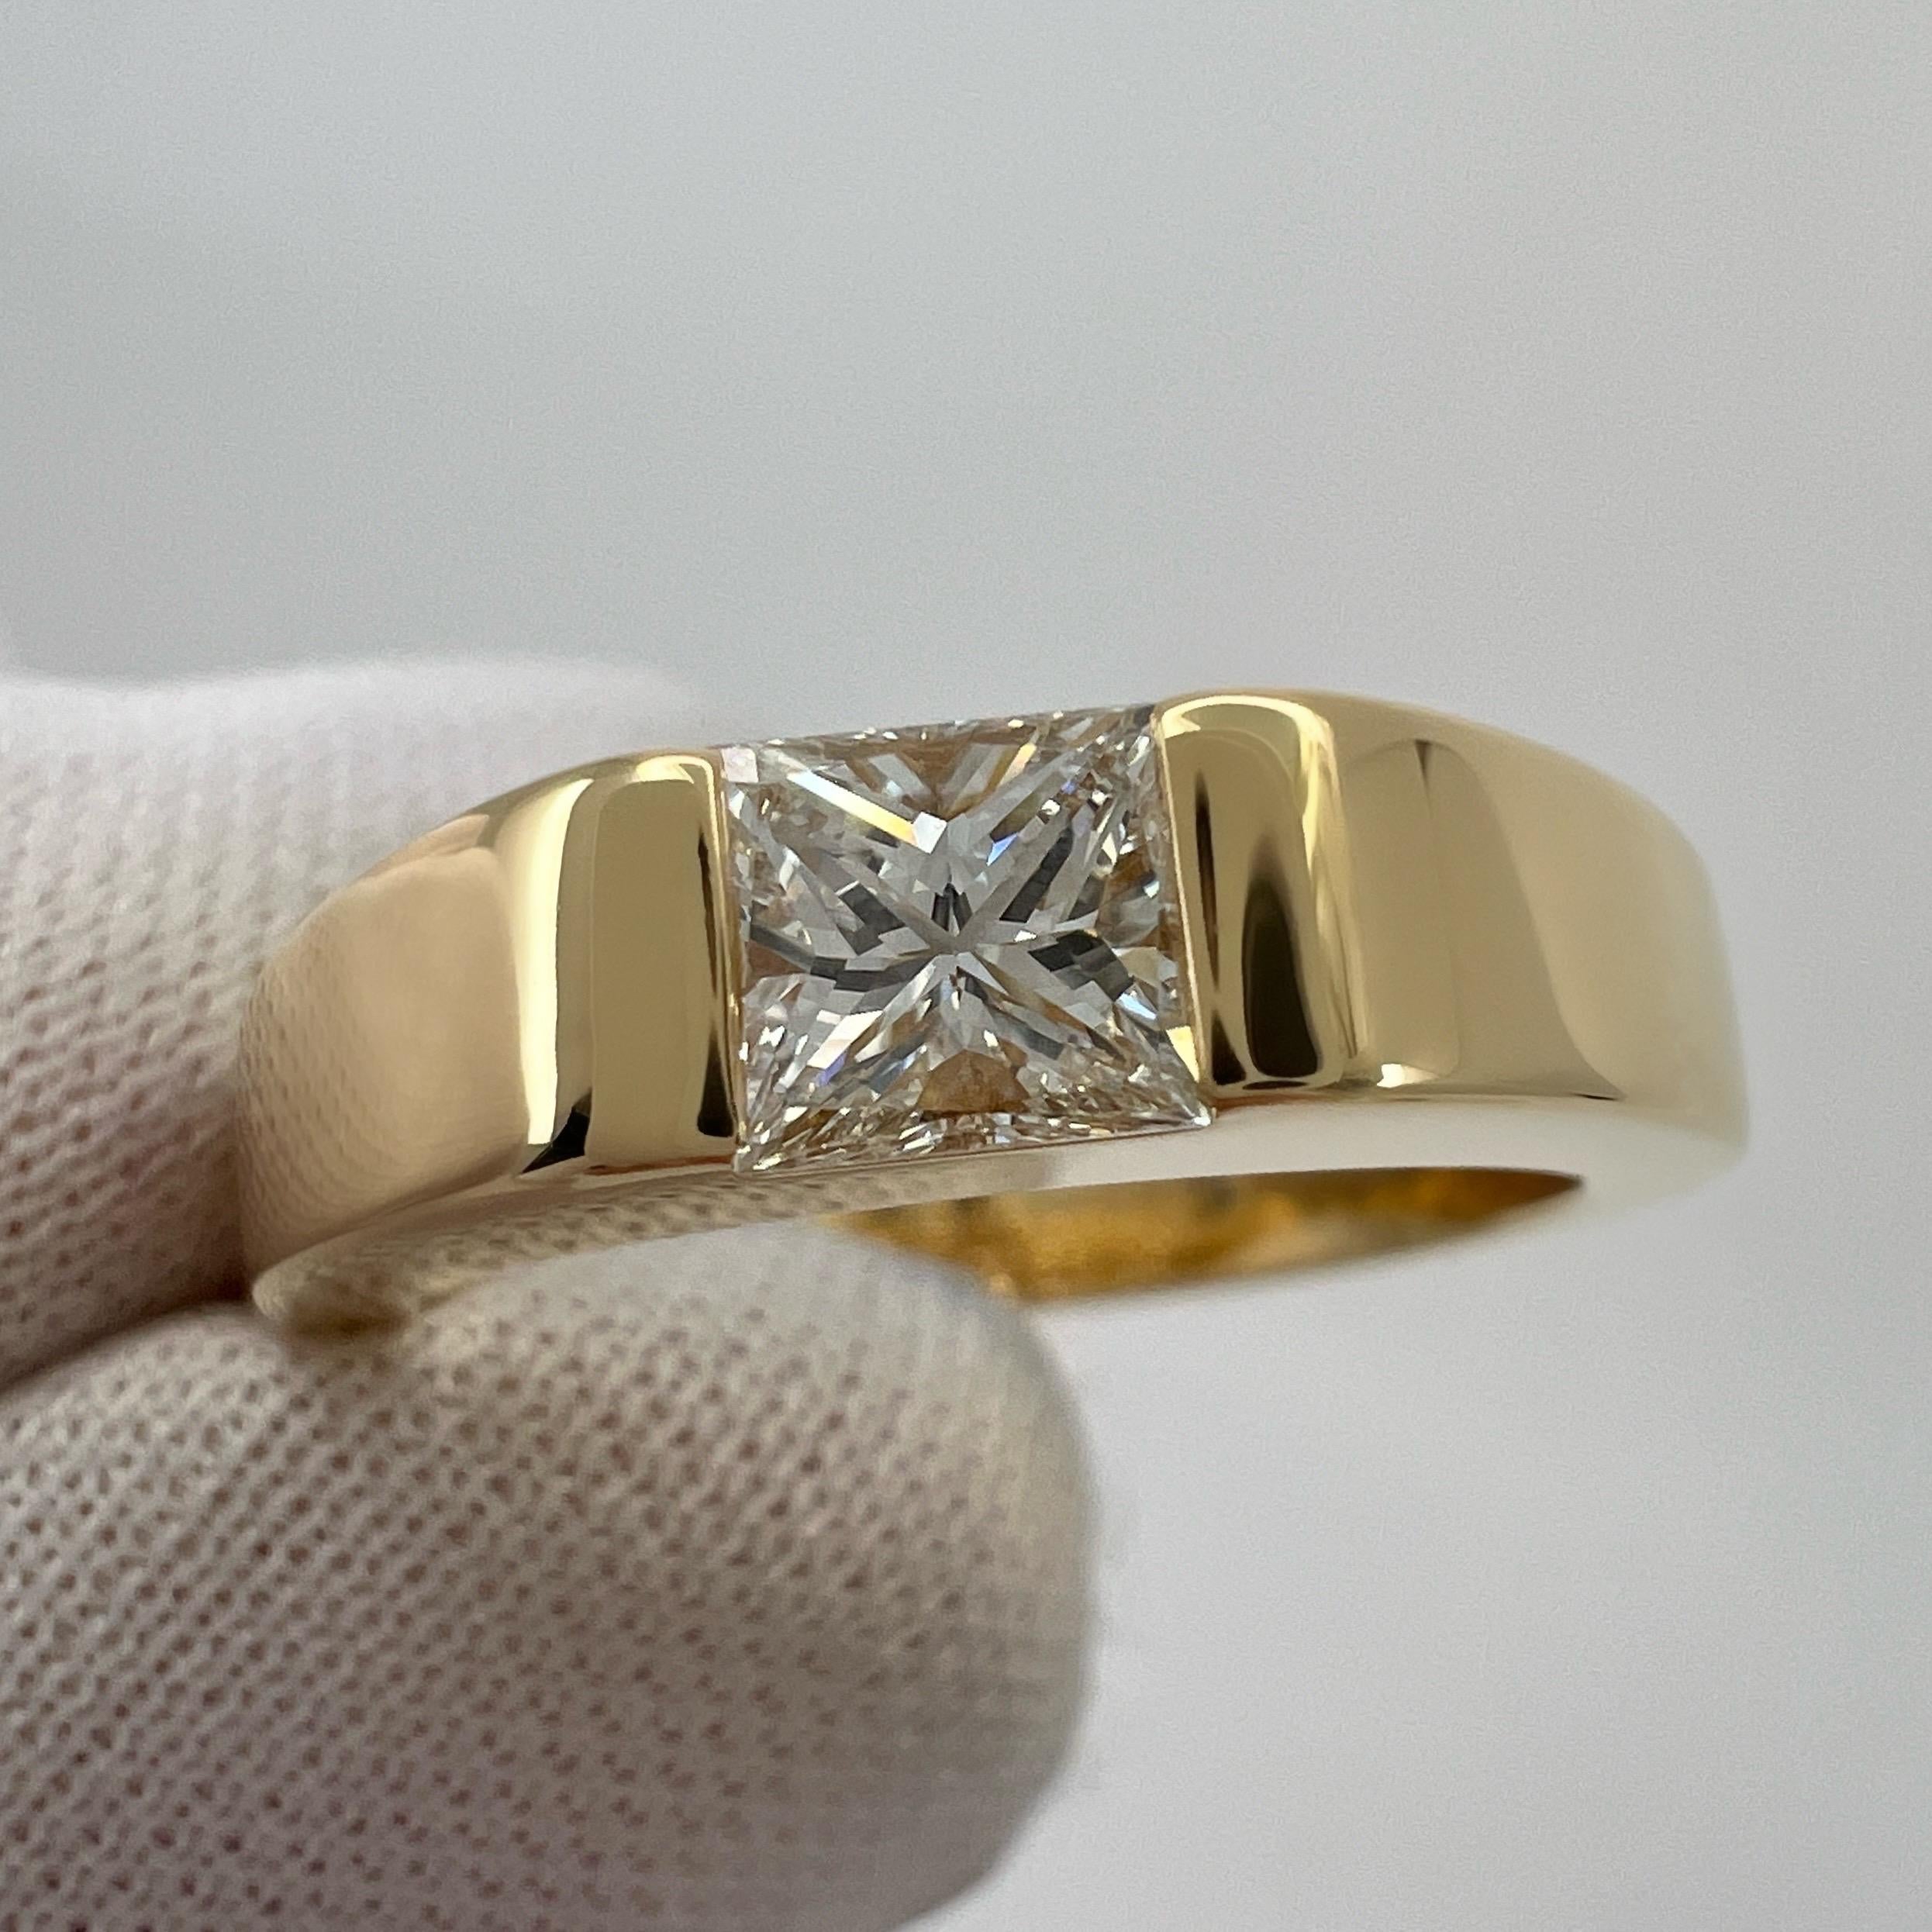 Vintage Cartier Natural Square Princess Cut Diamond 18k Yellow Gold Solitaire Band Ring.

Superbe bague en or jaune sertie d'un diamant de taille princesse carré de 0.45ct naturel. Approx. Couleur E/F, pureté VVS et excellente taille.
Les maisons de